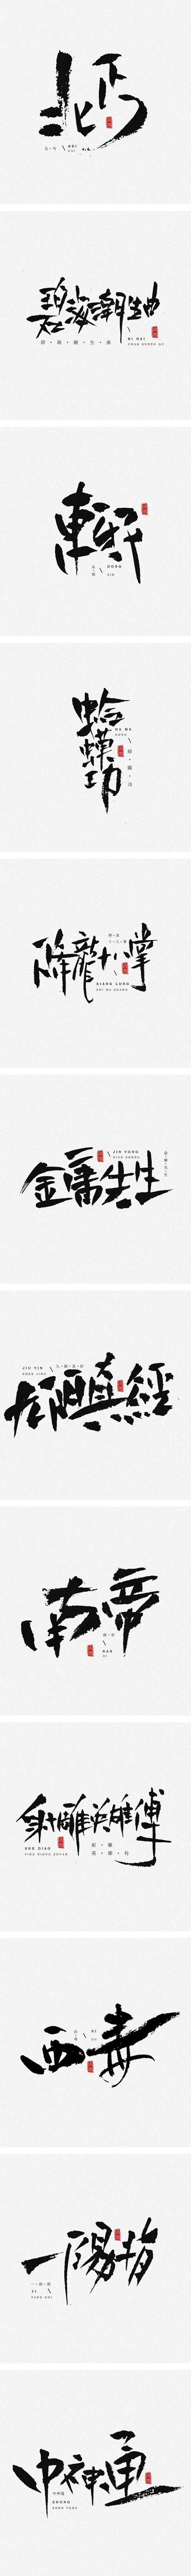 书法字体-字体传奇网-中国首个字体品牌设...